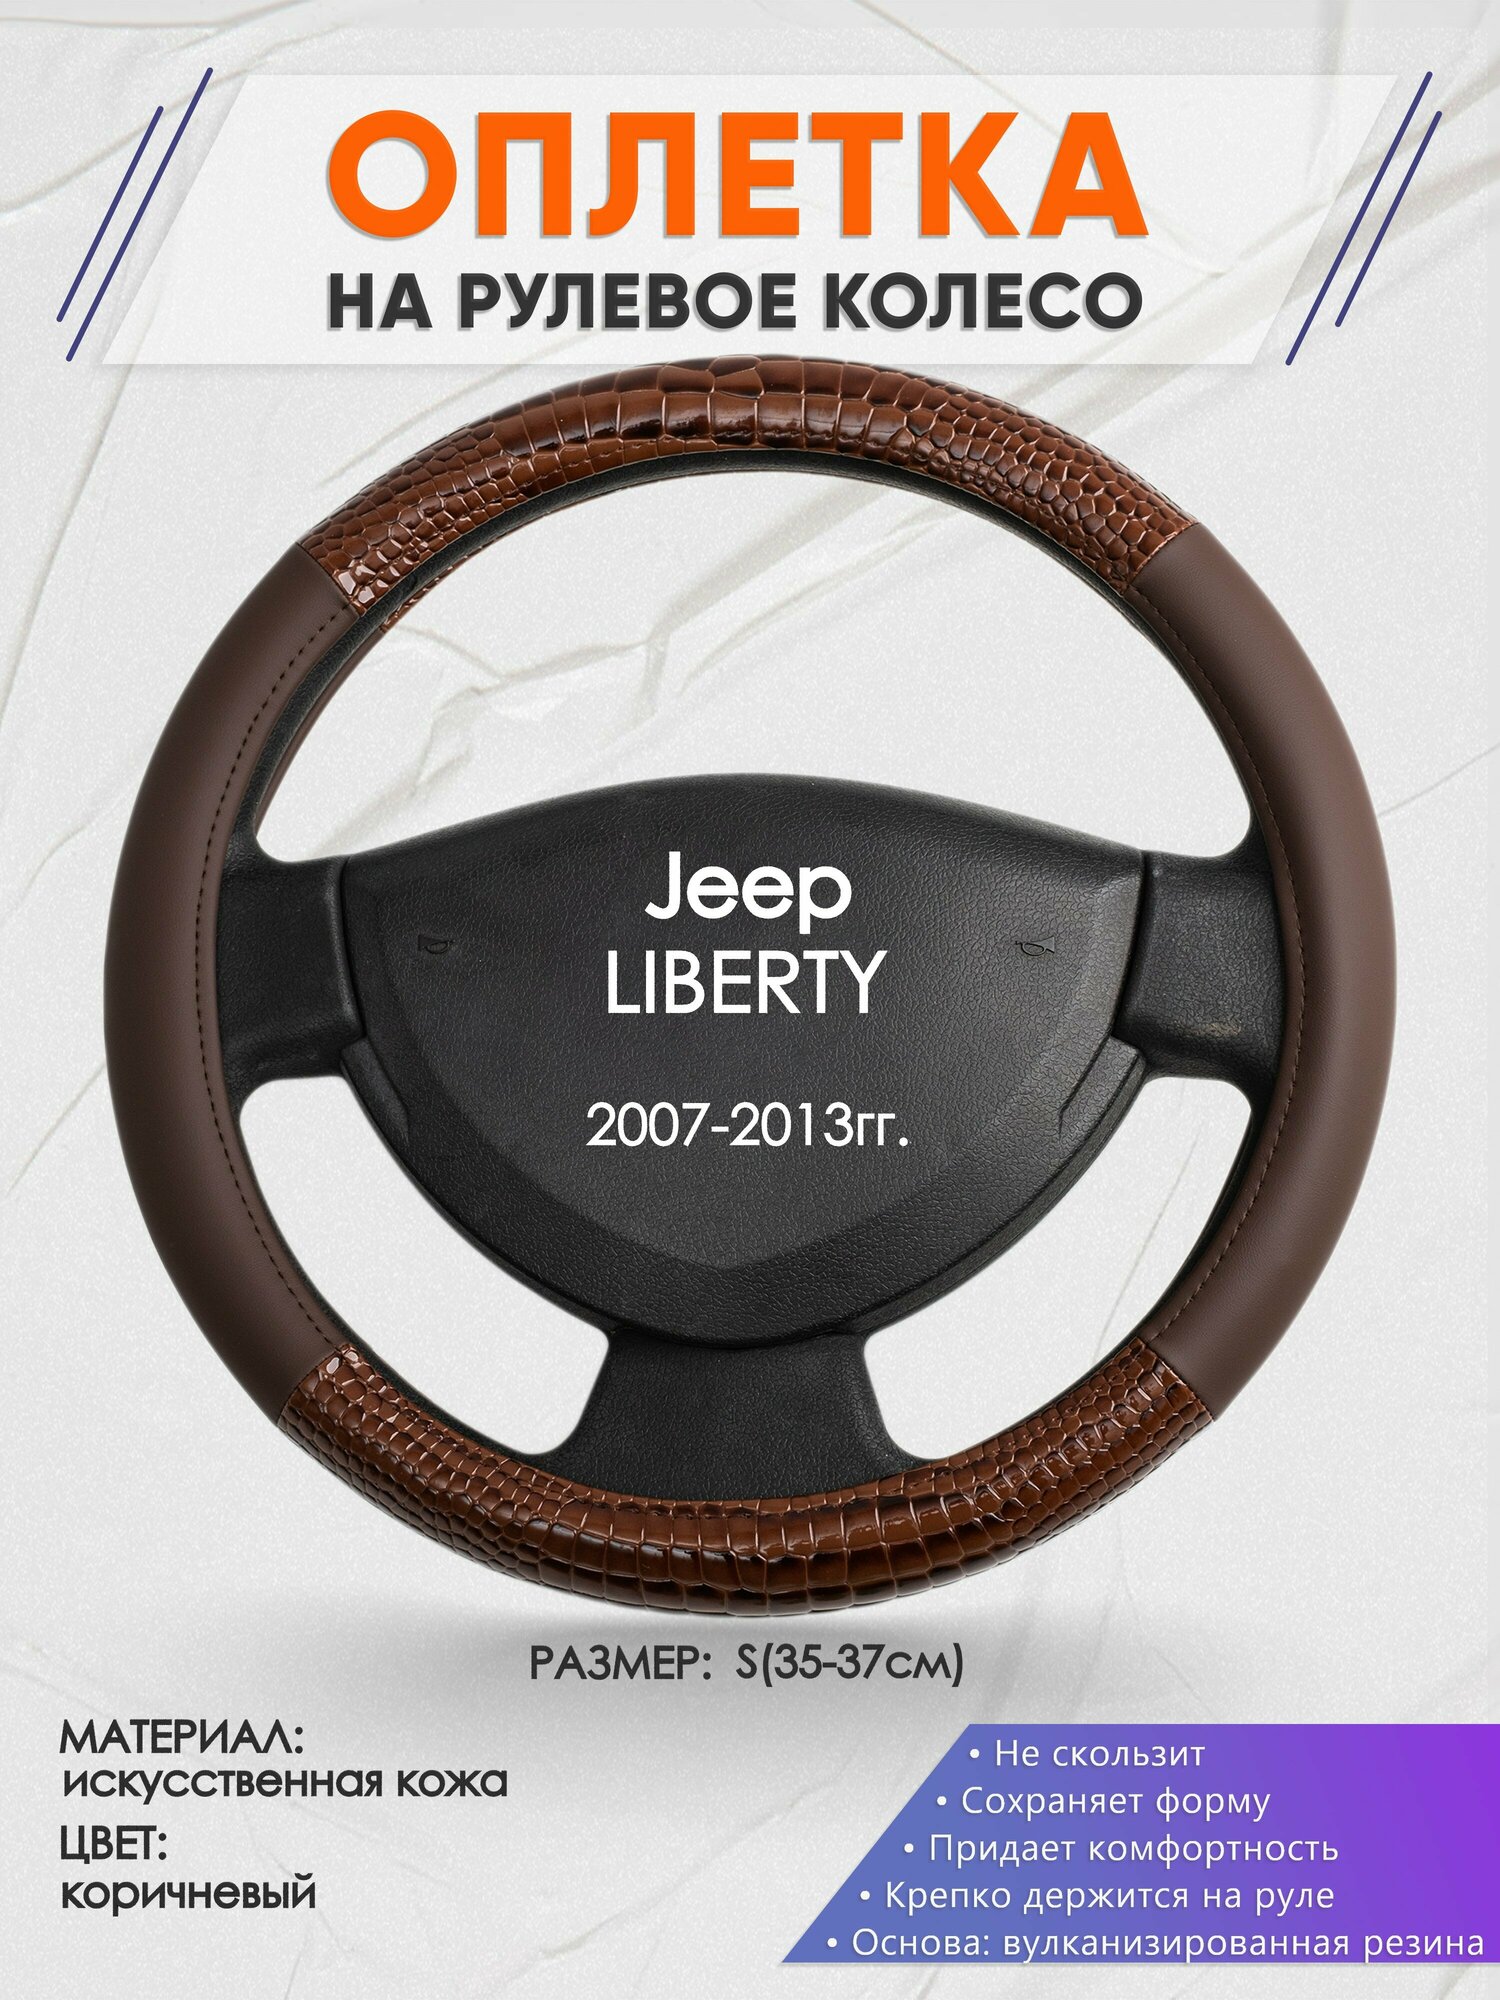 Оплетка на руль для Jeep LIBERTY(Джип Либерти) 2007-2013, S(35-37см), Искусственная кожа 85